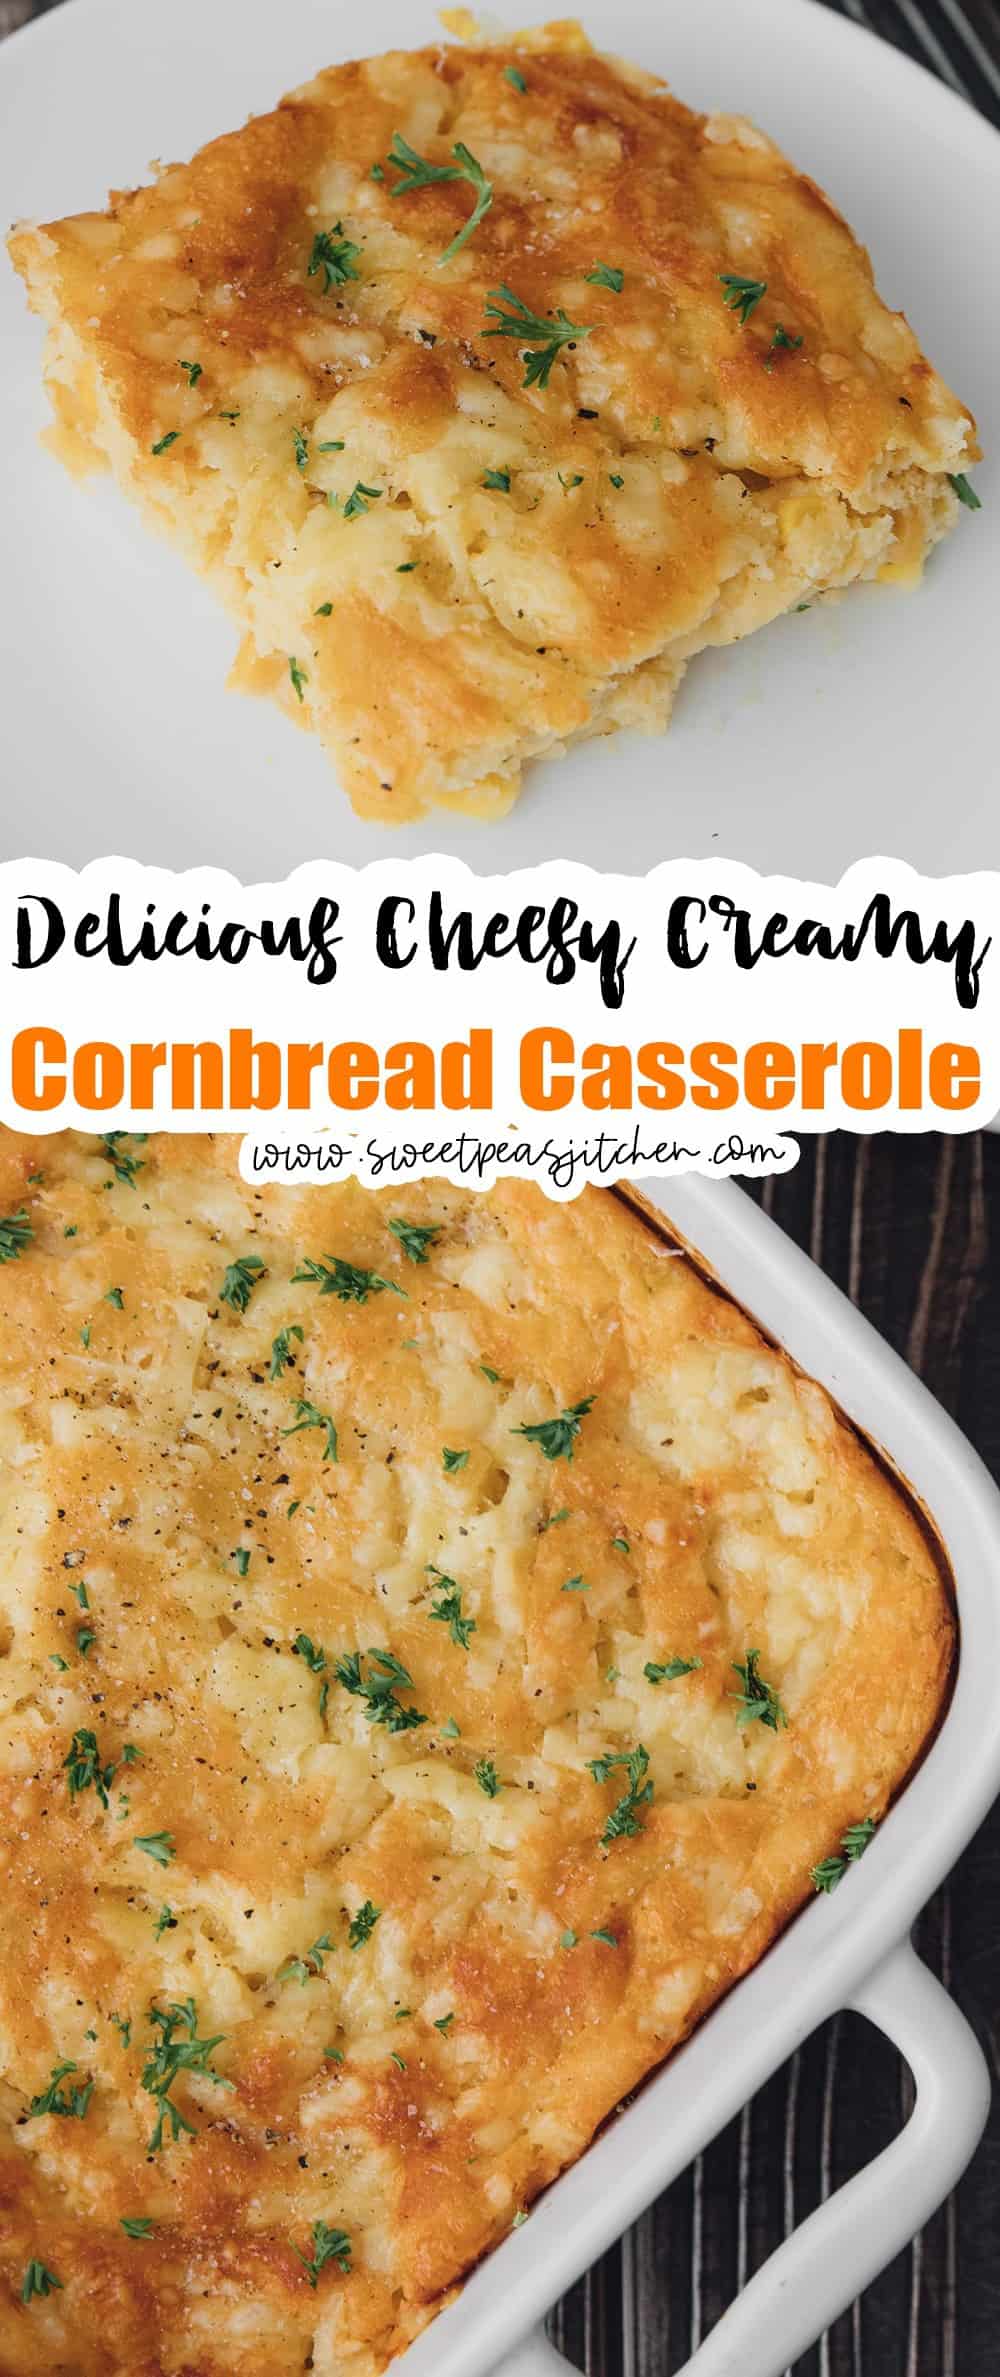 Cheesy, Creamy Cornbread Casserole